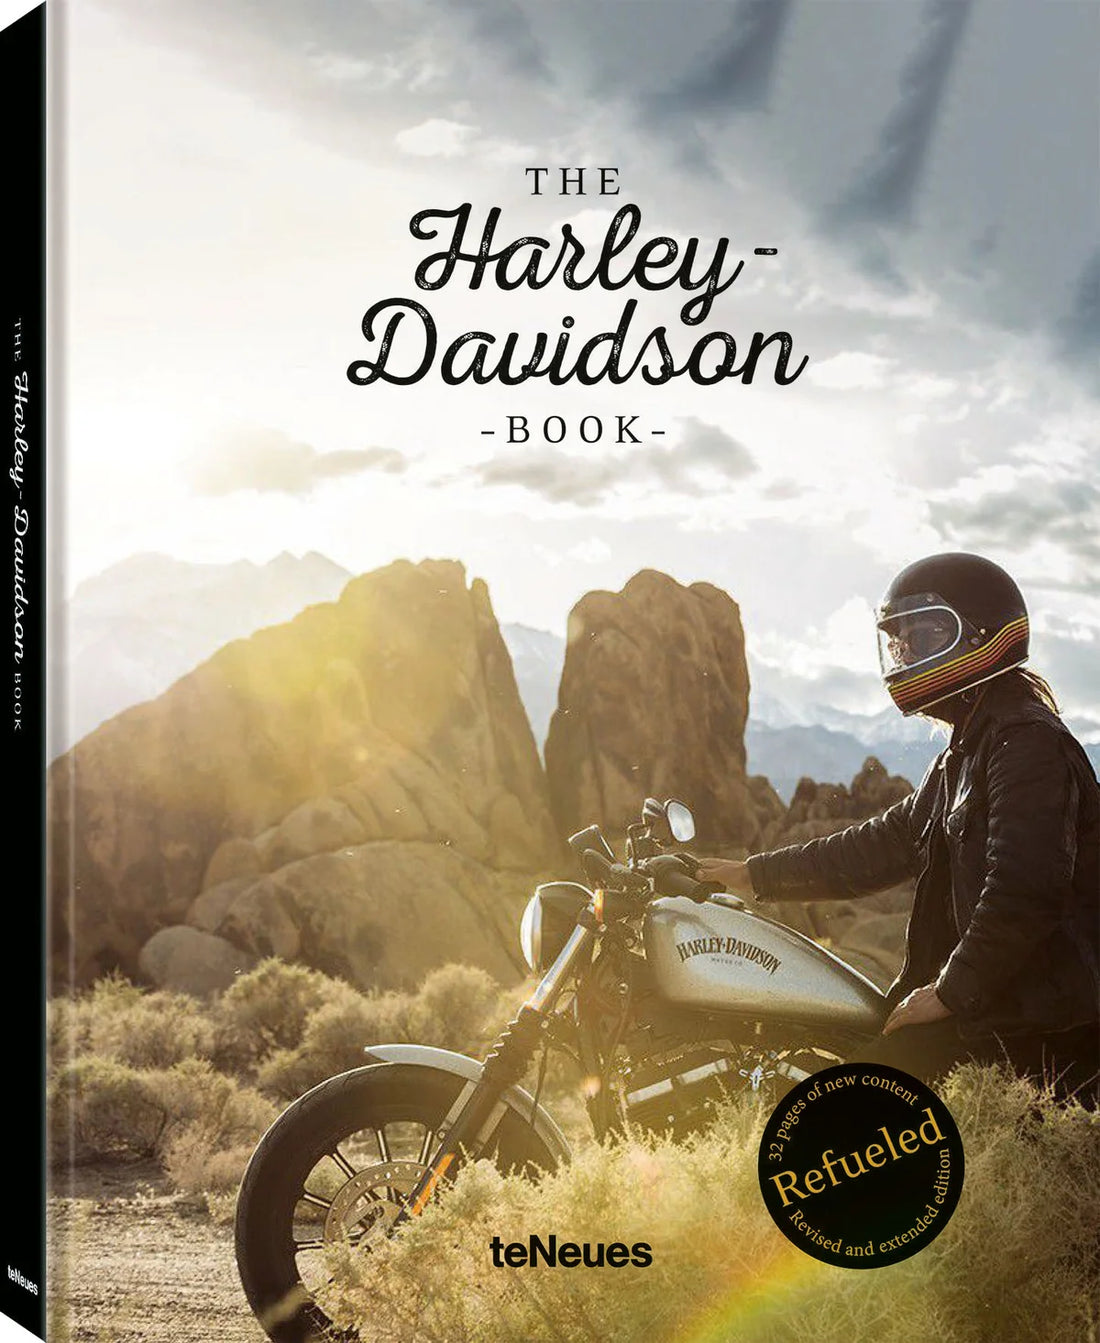 THE HARLEY-DAVIDSON BOOK